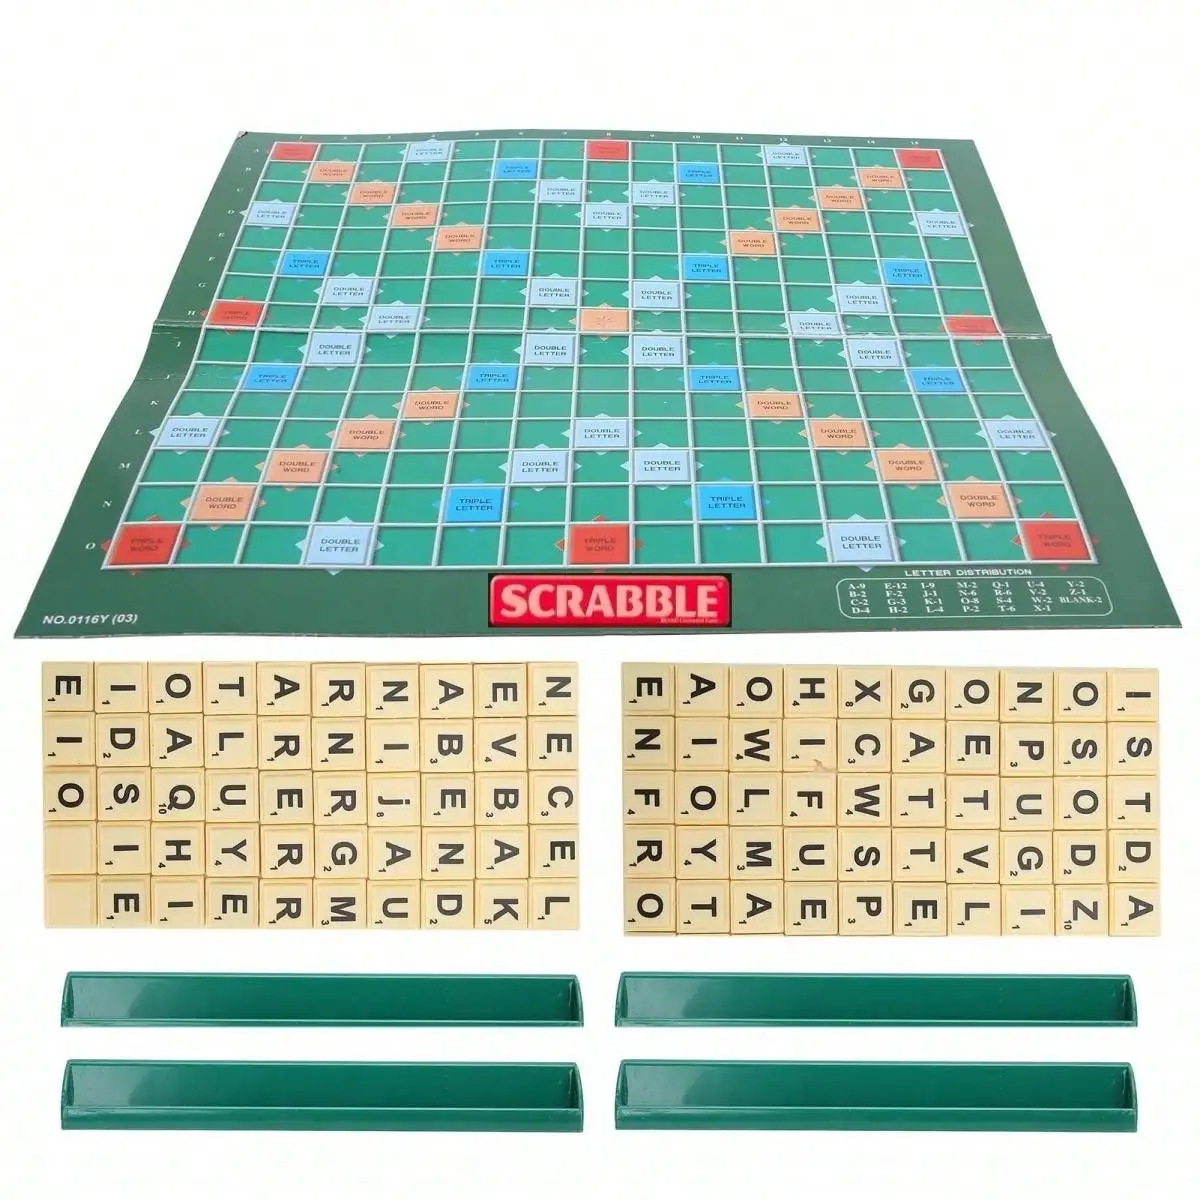 Juego de mesa para 2-4 jugadores, juego de mesa con alfabeto, solitario, inglés, piezas